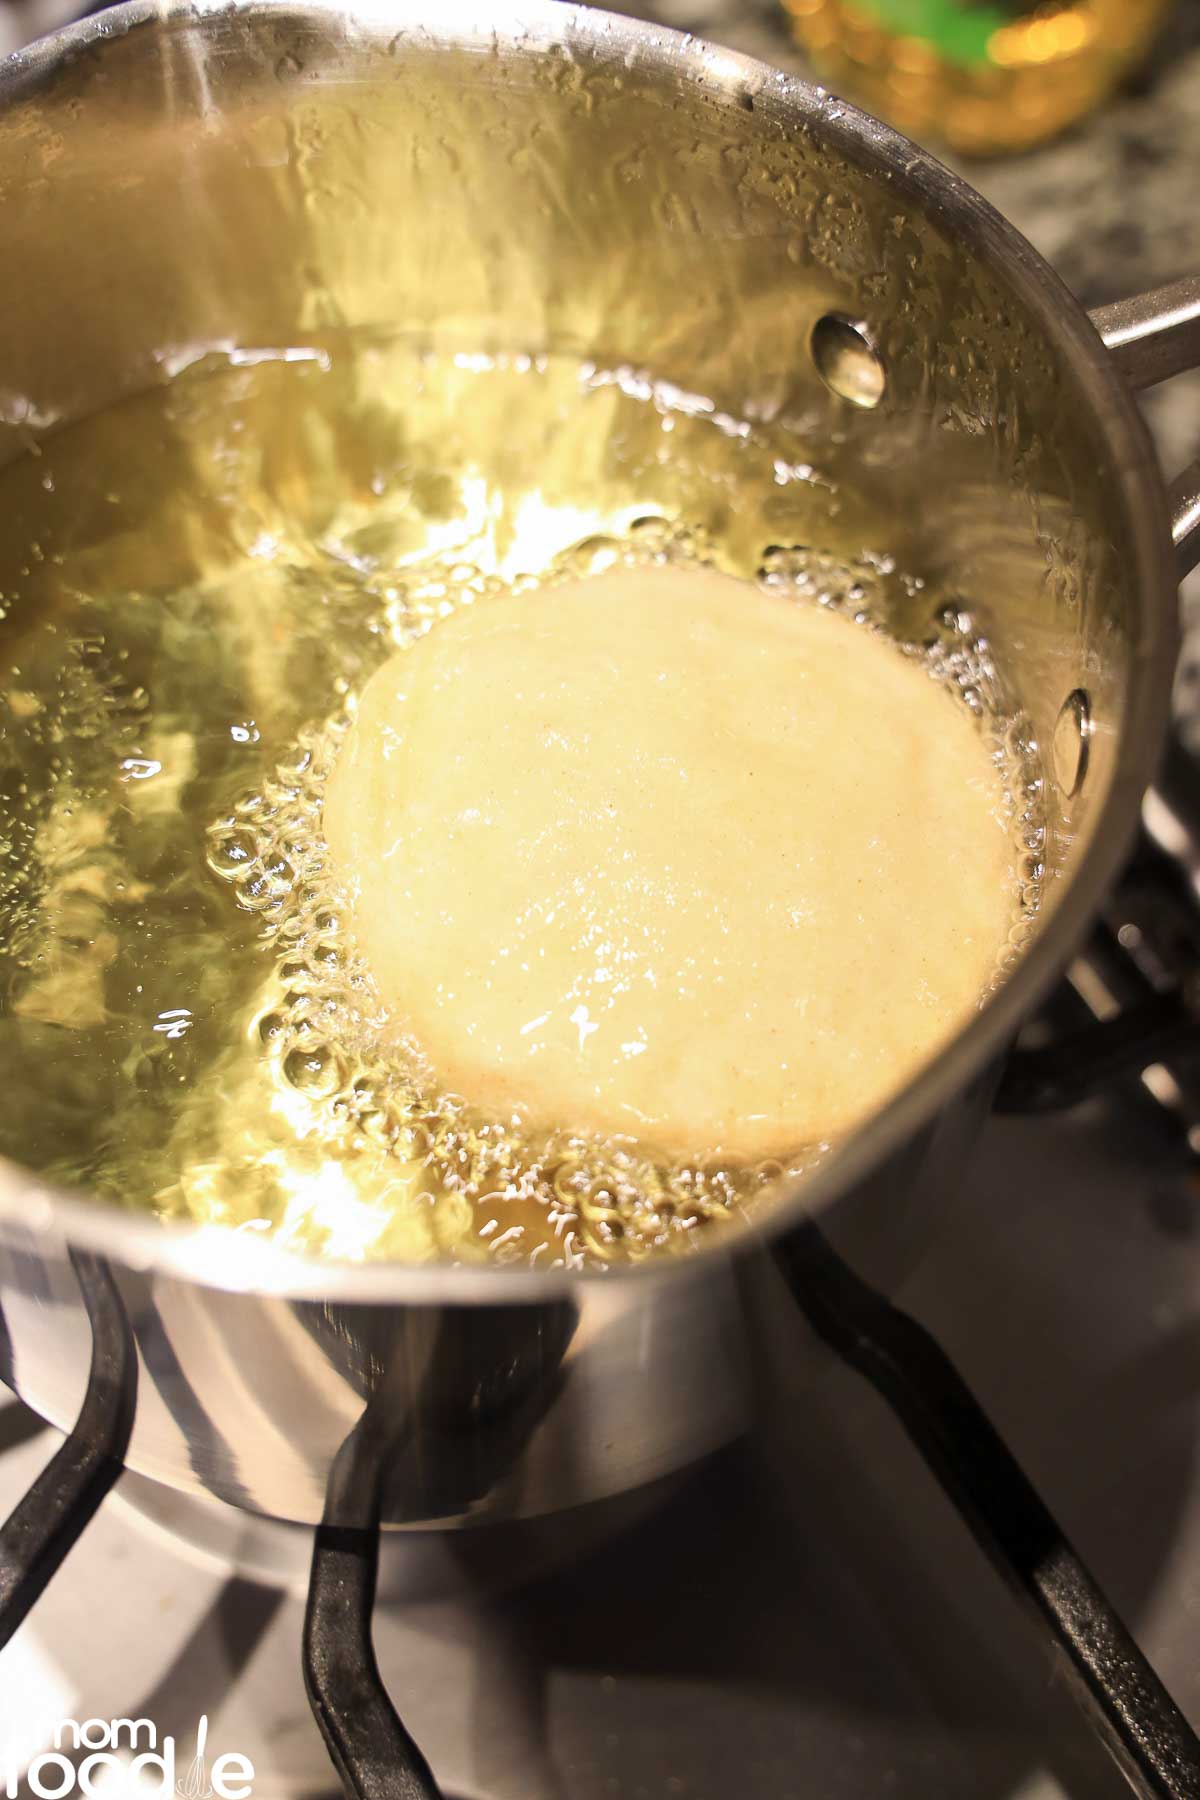 Frying Sopes in oil.